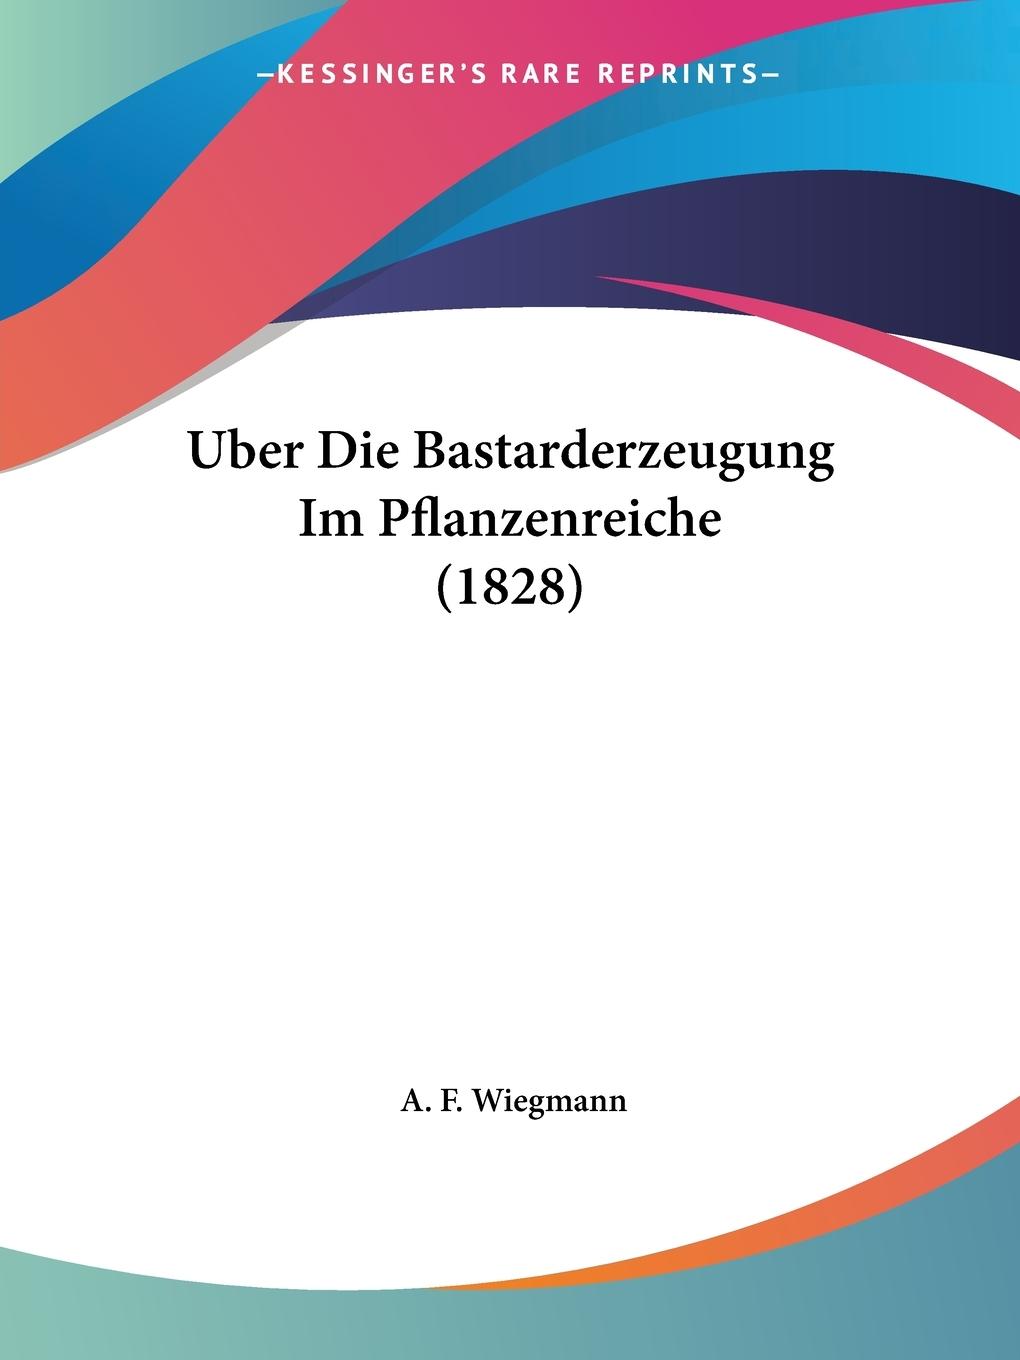 Uber Die Bastarderzeugung Im Pflanzenreiche (1828) - Wiegmann, A. F.